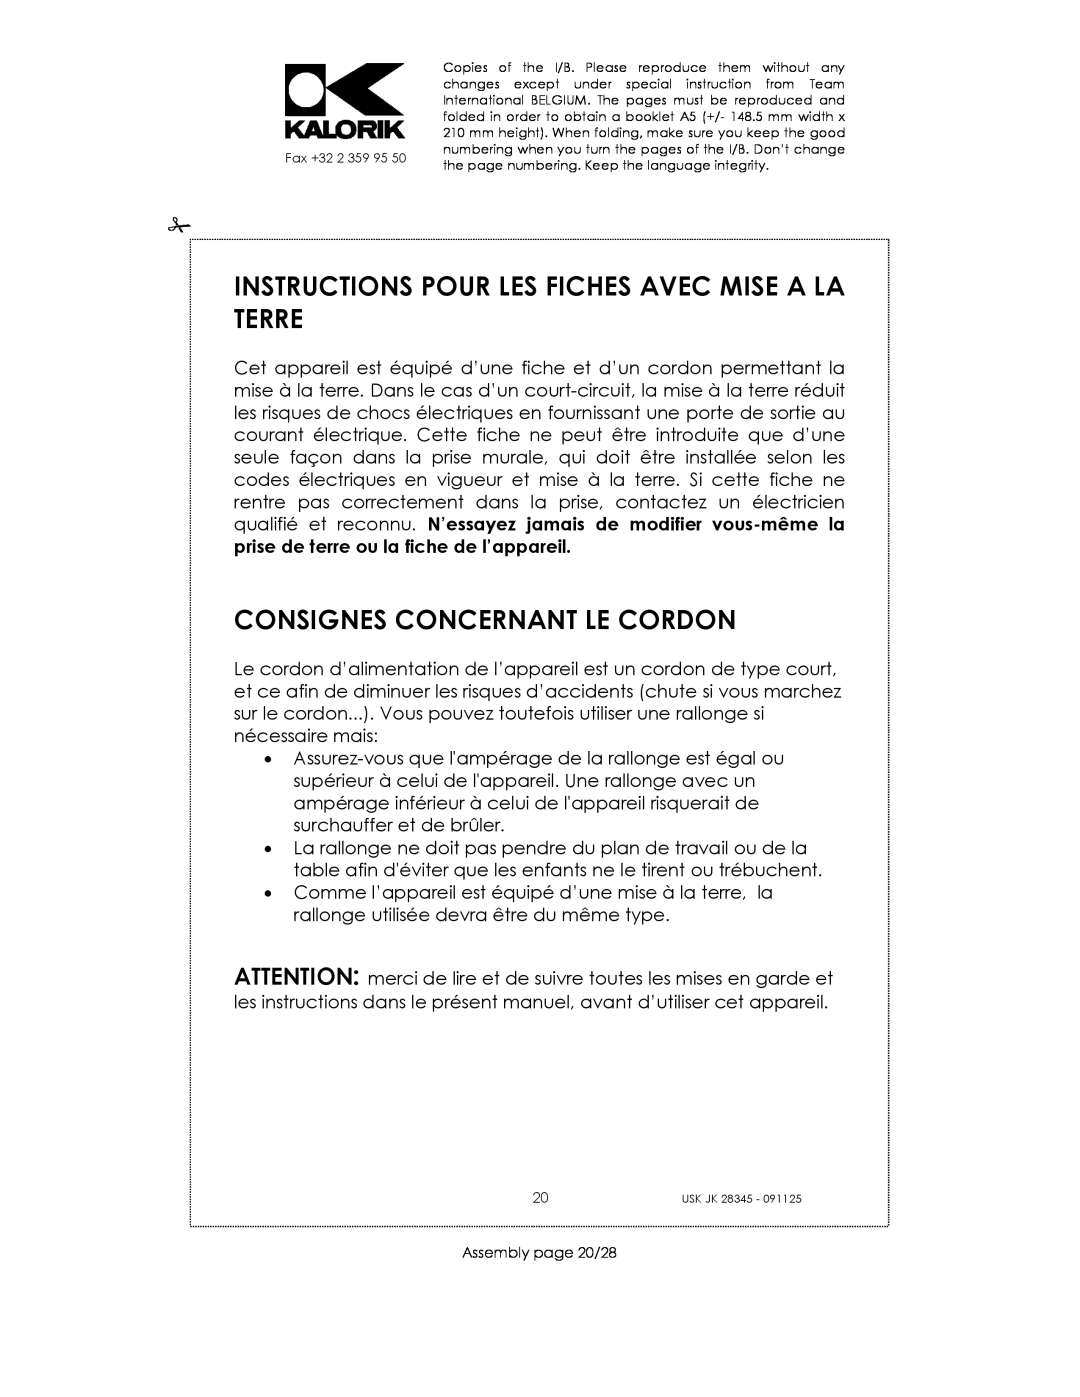 Kalorik USK JK 28345 manual Instructions Pour Les Fiches Avec Mise A La Terre, Consignes Concernant Le Cordon 